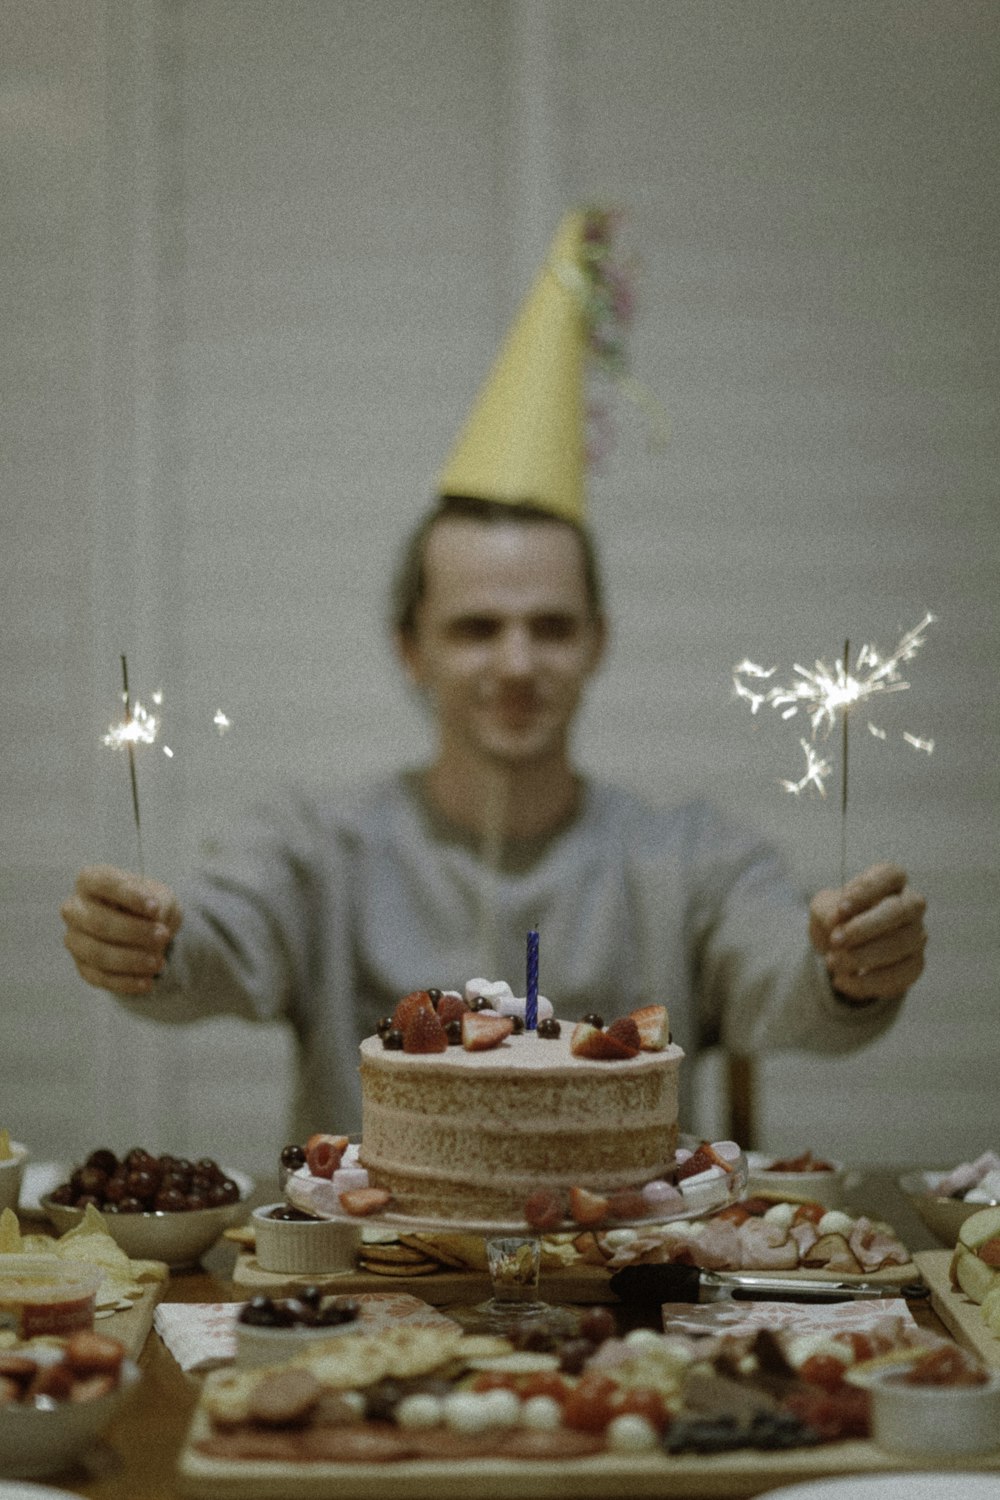 Fotografia de foco seletivo do homem segurando espumantes entre o bolo